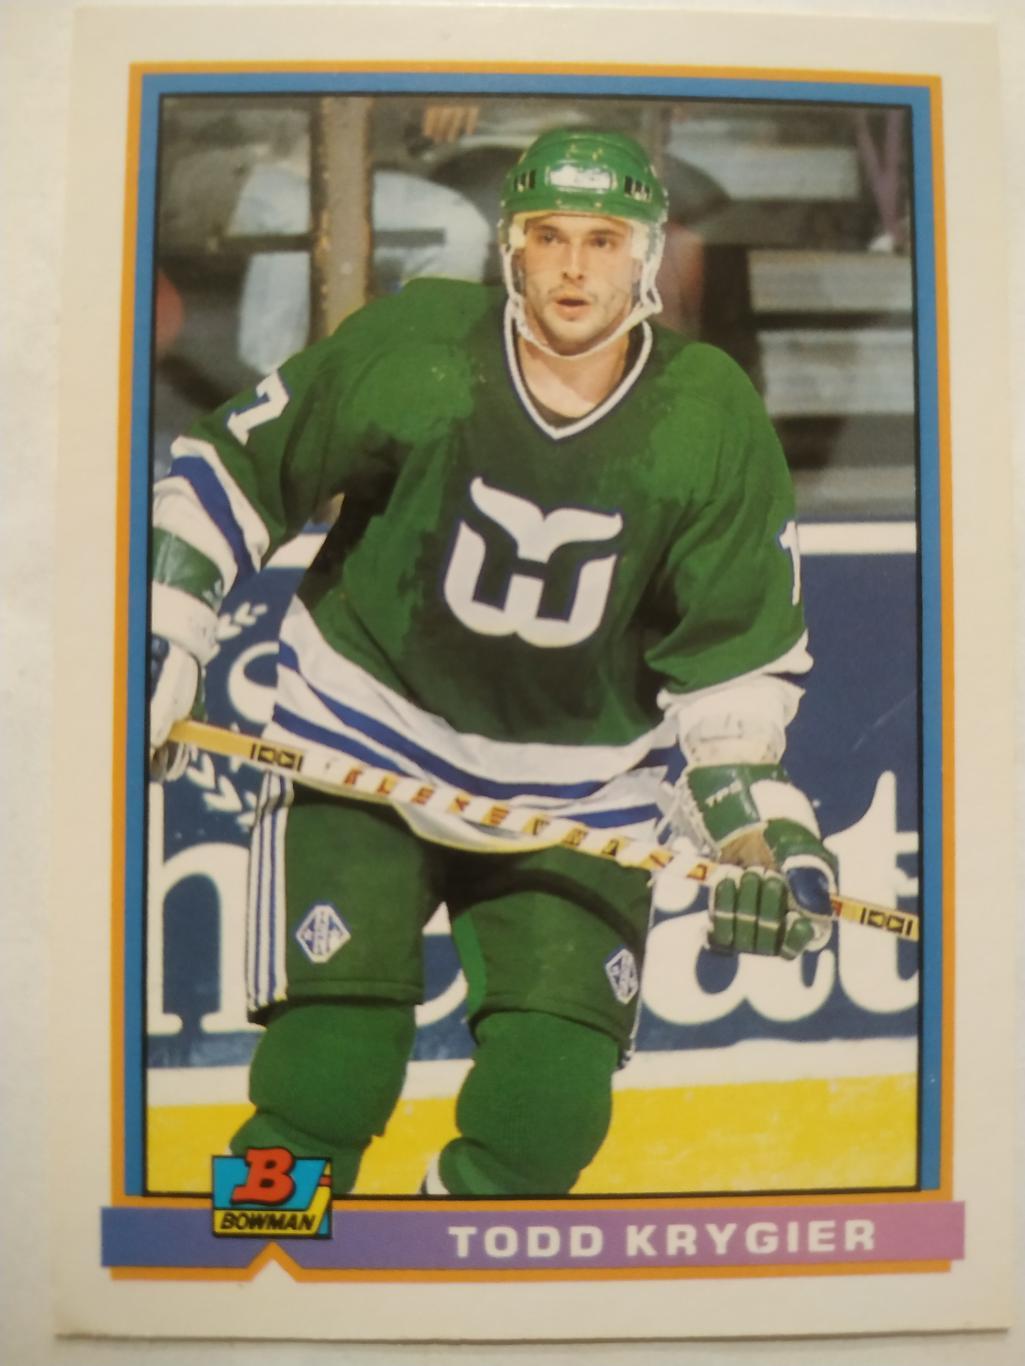 ХОККЕЙ КАРТОЧКА НХЛ BOWMAN 1991-92 NHL TODD KRYGIER HARTFORD WHALERS #2